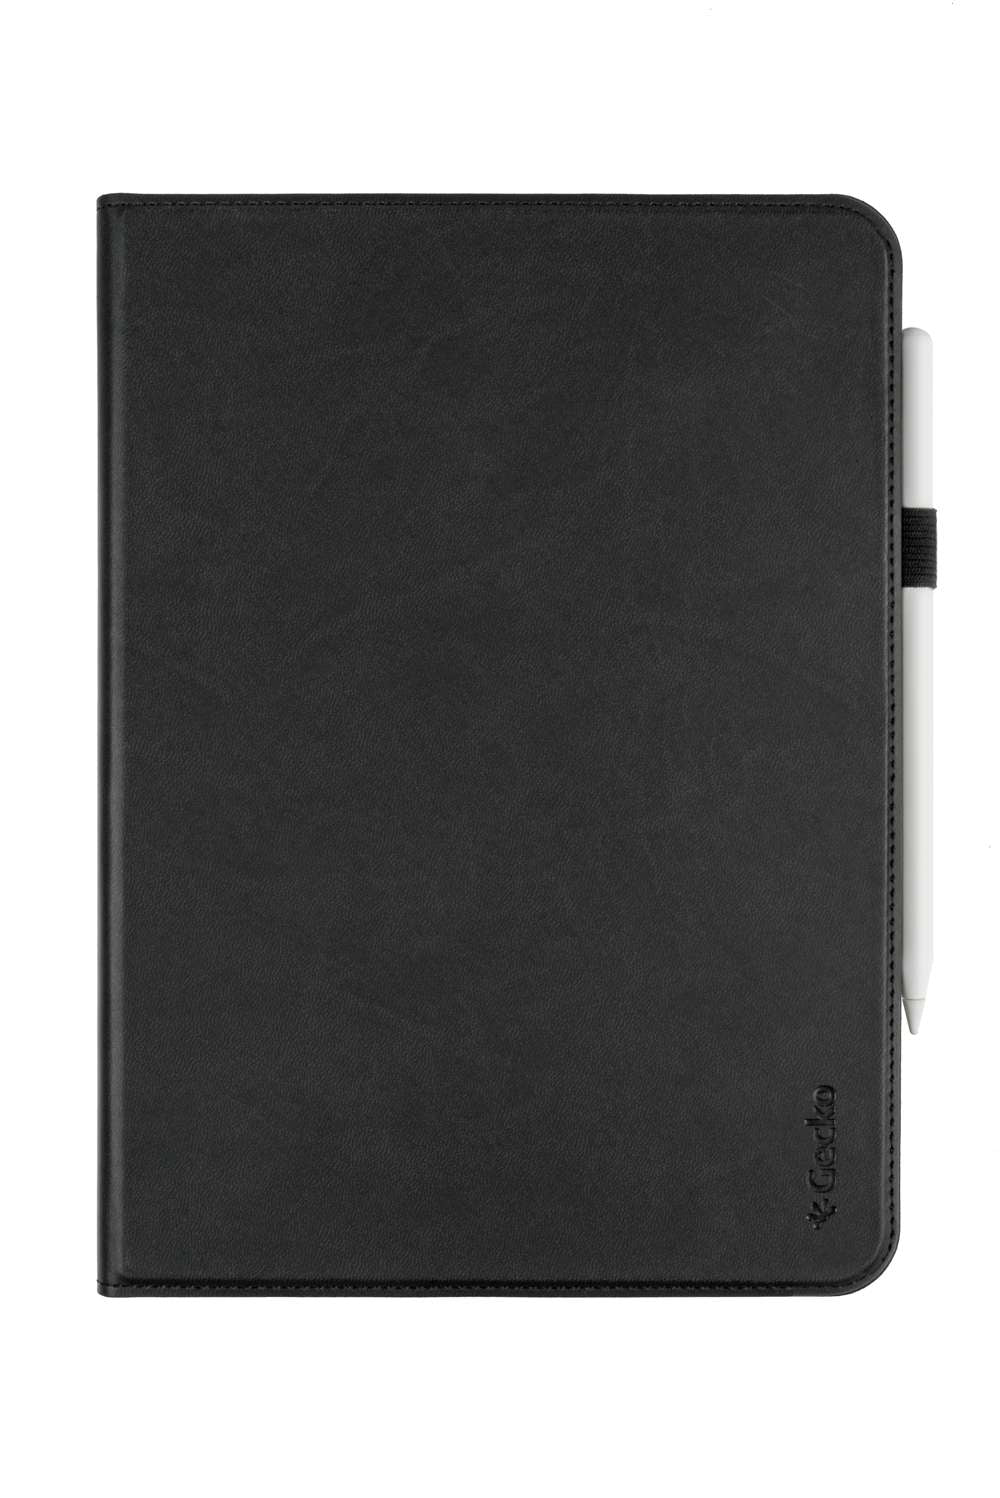 V10T56C1 - Tablet case - Apple iPad Pro 11 inch (2021) - Zwart